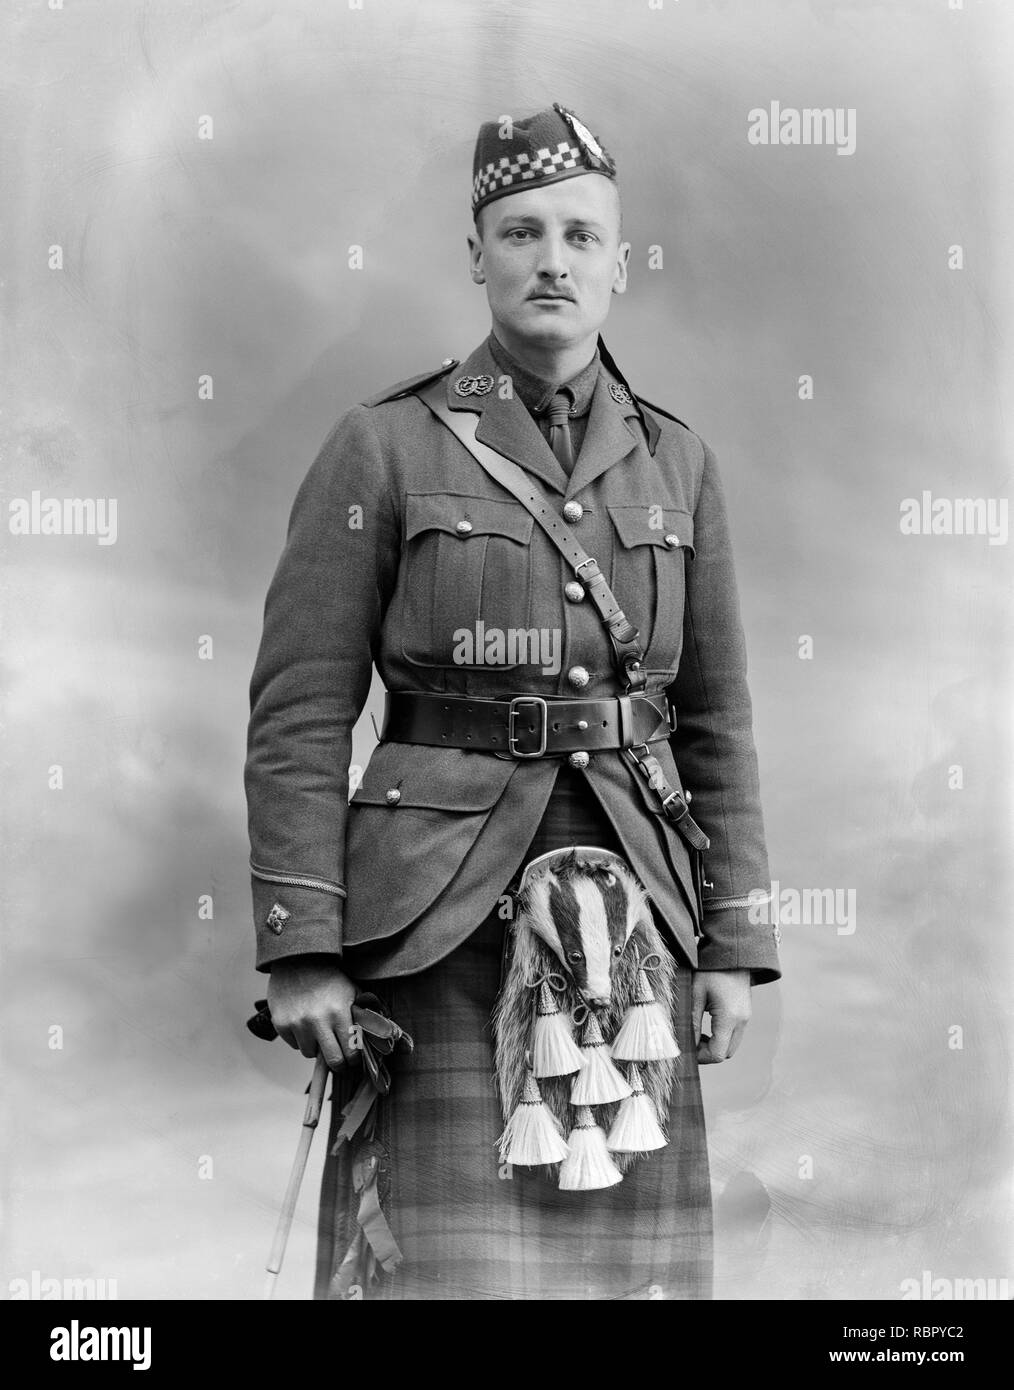 Photographie prise le 29 mai 1915. Le Sous-lieutenant R. Angus l'argile des Argyll and Sutherland Highlanders, un régiment de l'armée britannique. Photographie prise dans la célèbre London Studio de Bassano. Banque D'Images